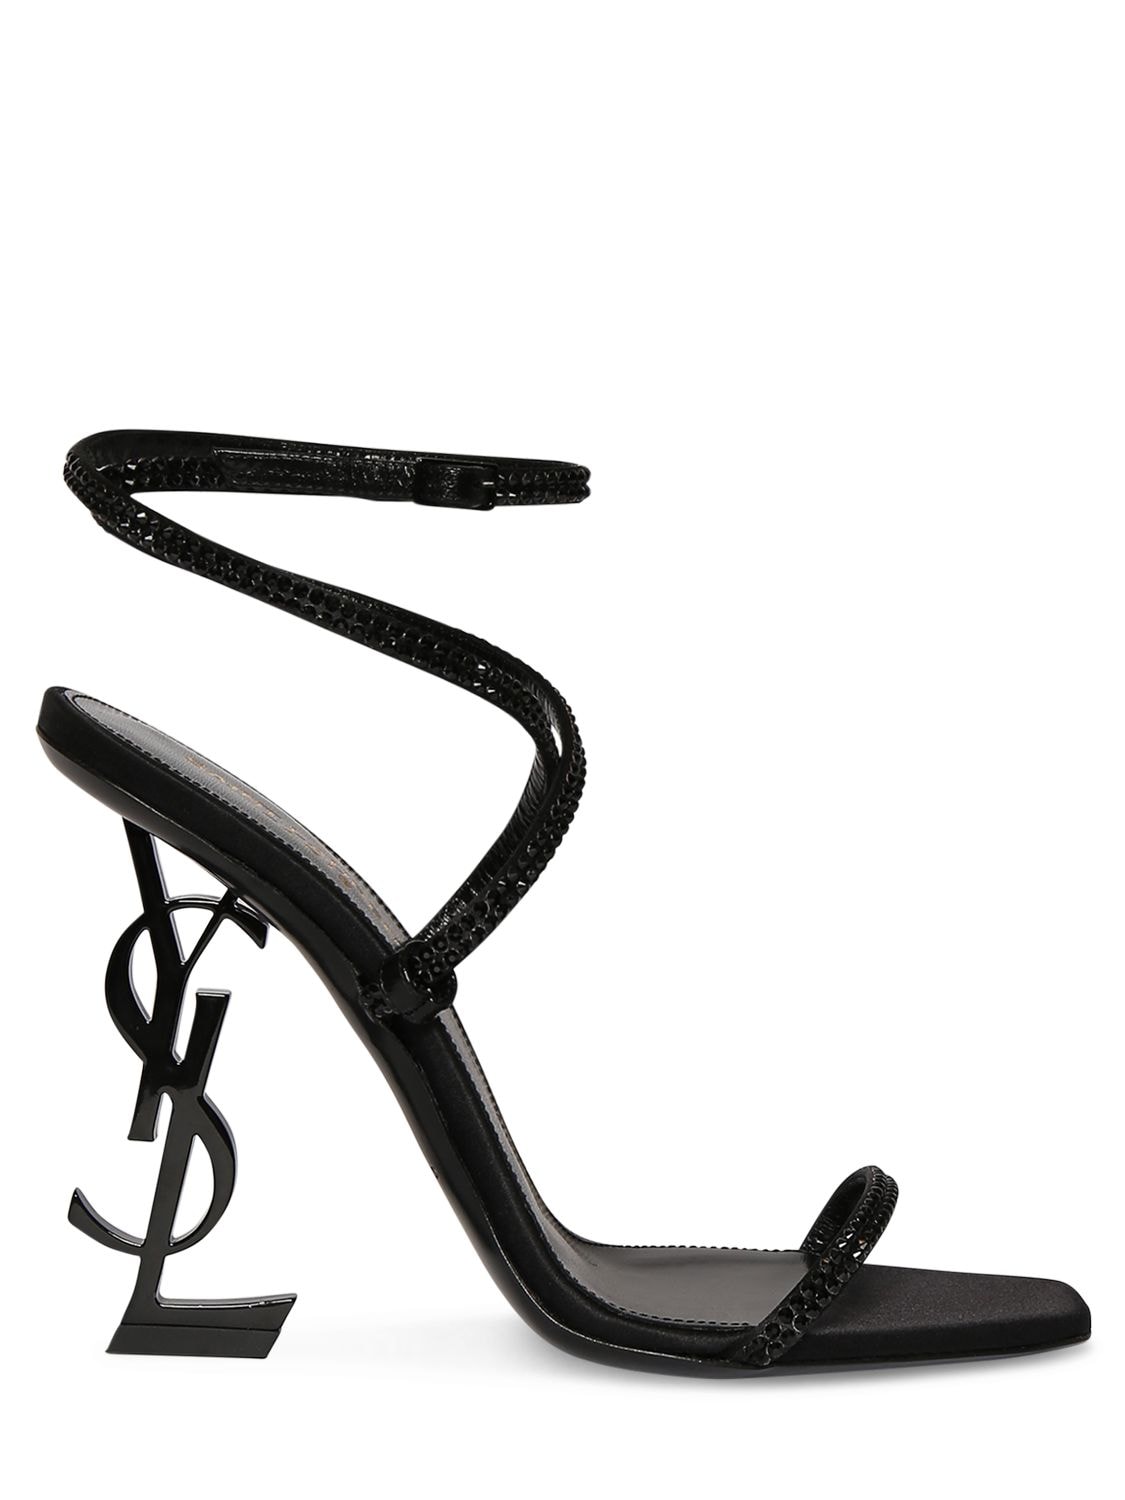 Saint Laurent 110mm Opyum Embellished Satin Sandals In Black | ModeSens